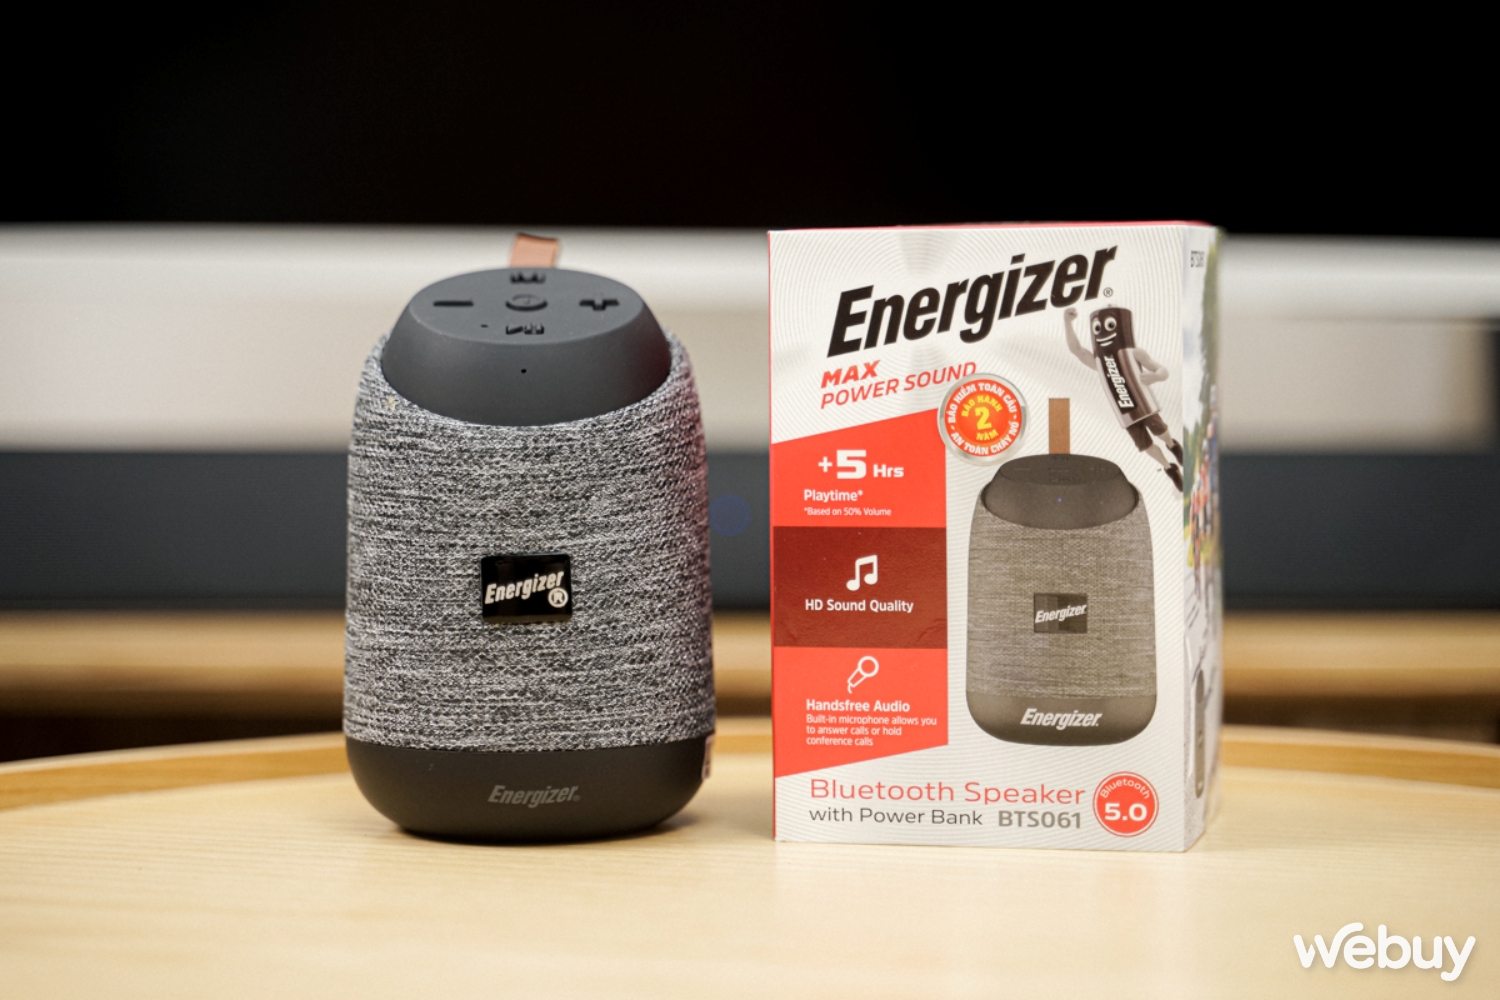 Săn sale loa mini Energizer giảm 70%: Nghe đủ hay, pin đủ lâu nhưng phải giảm giá mới đáng mua - Ảnh 1.